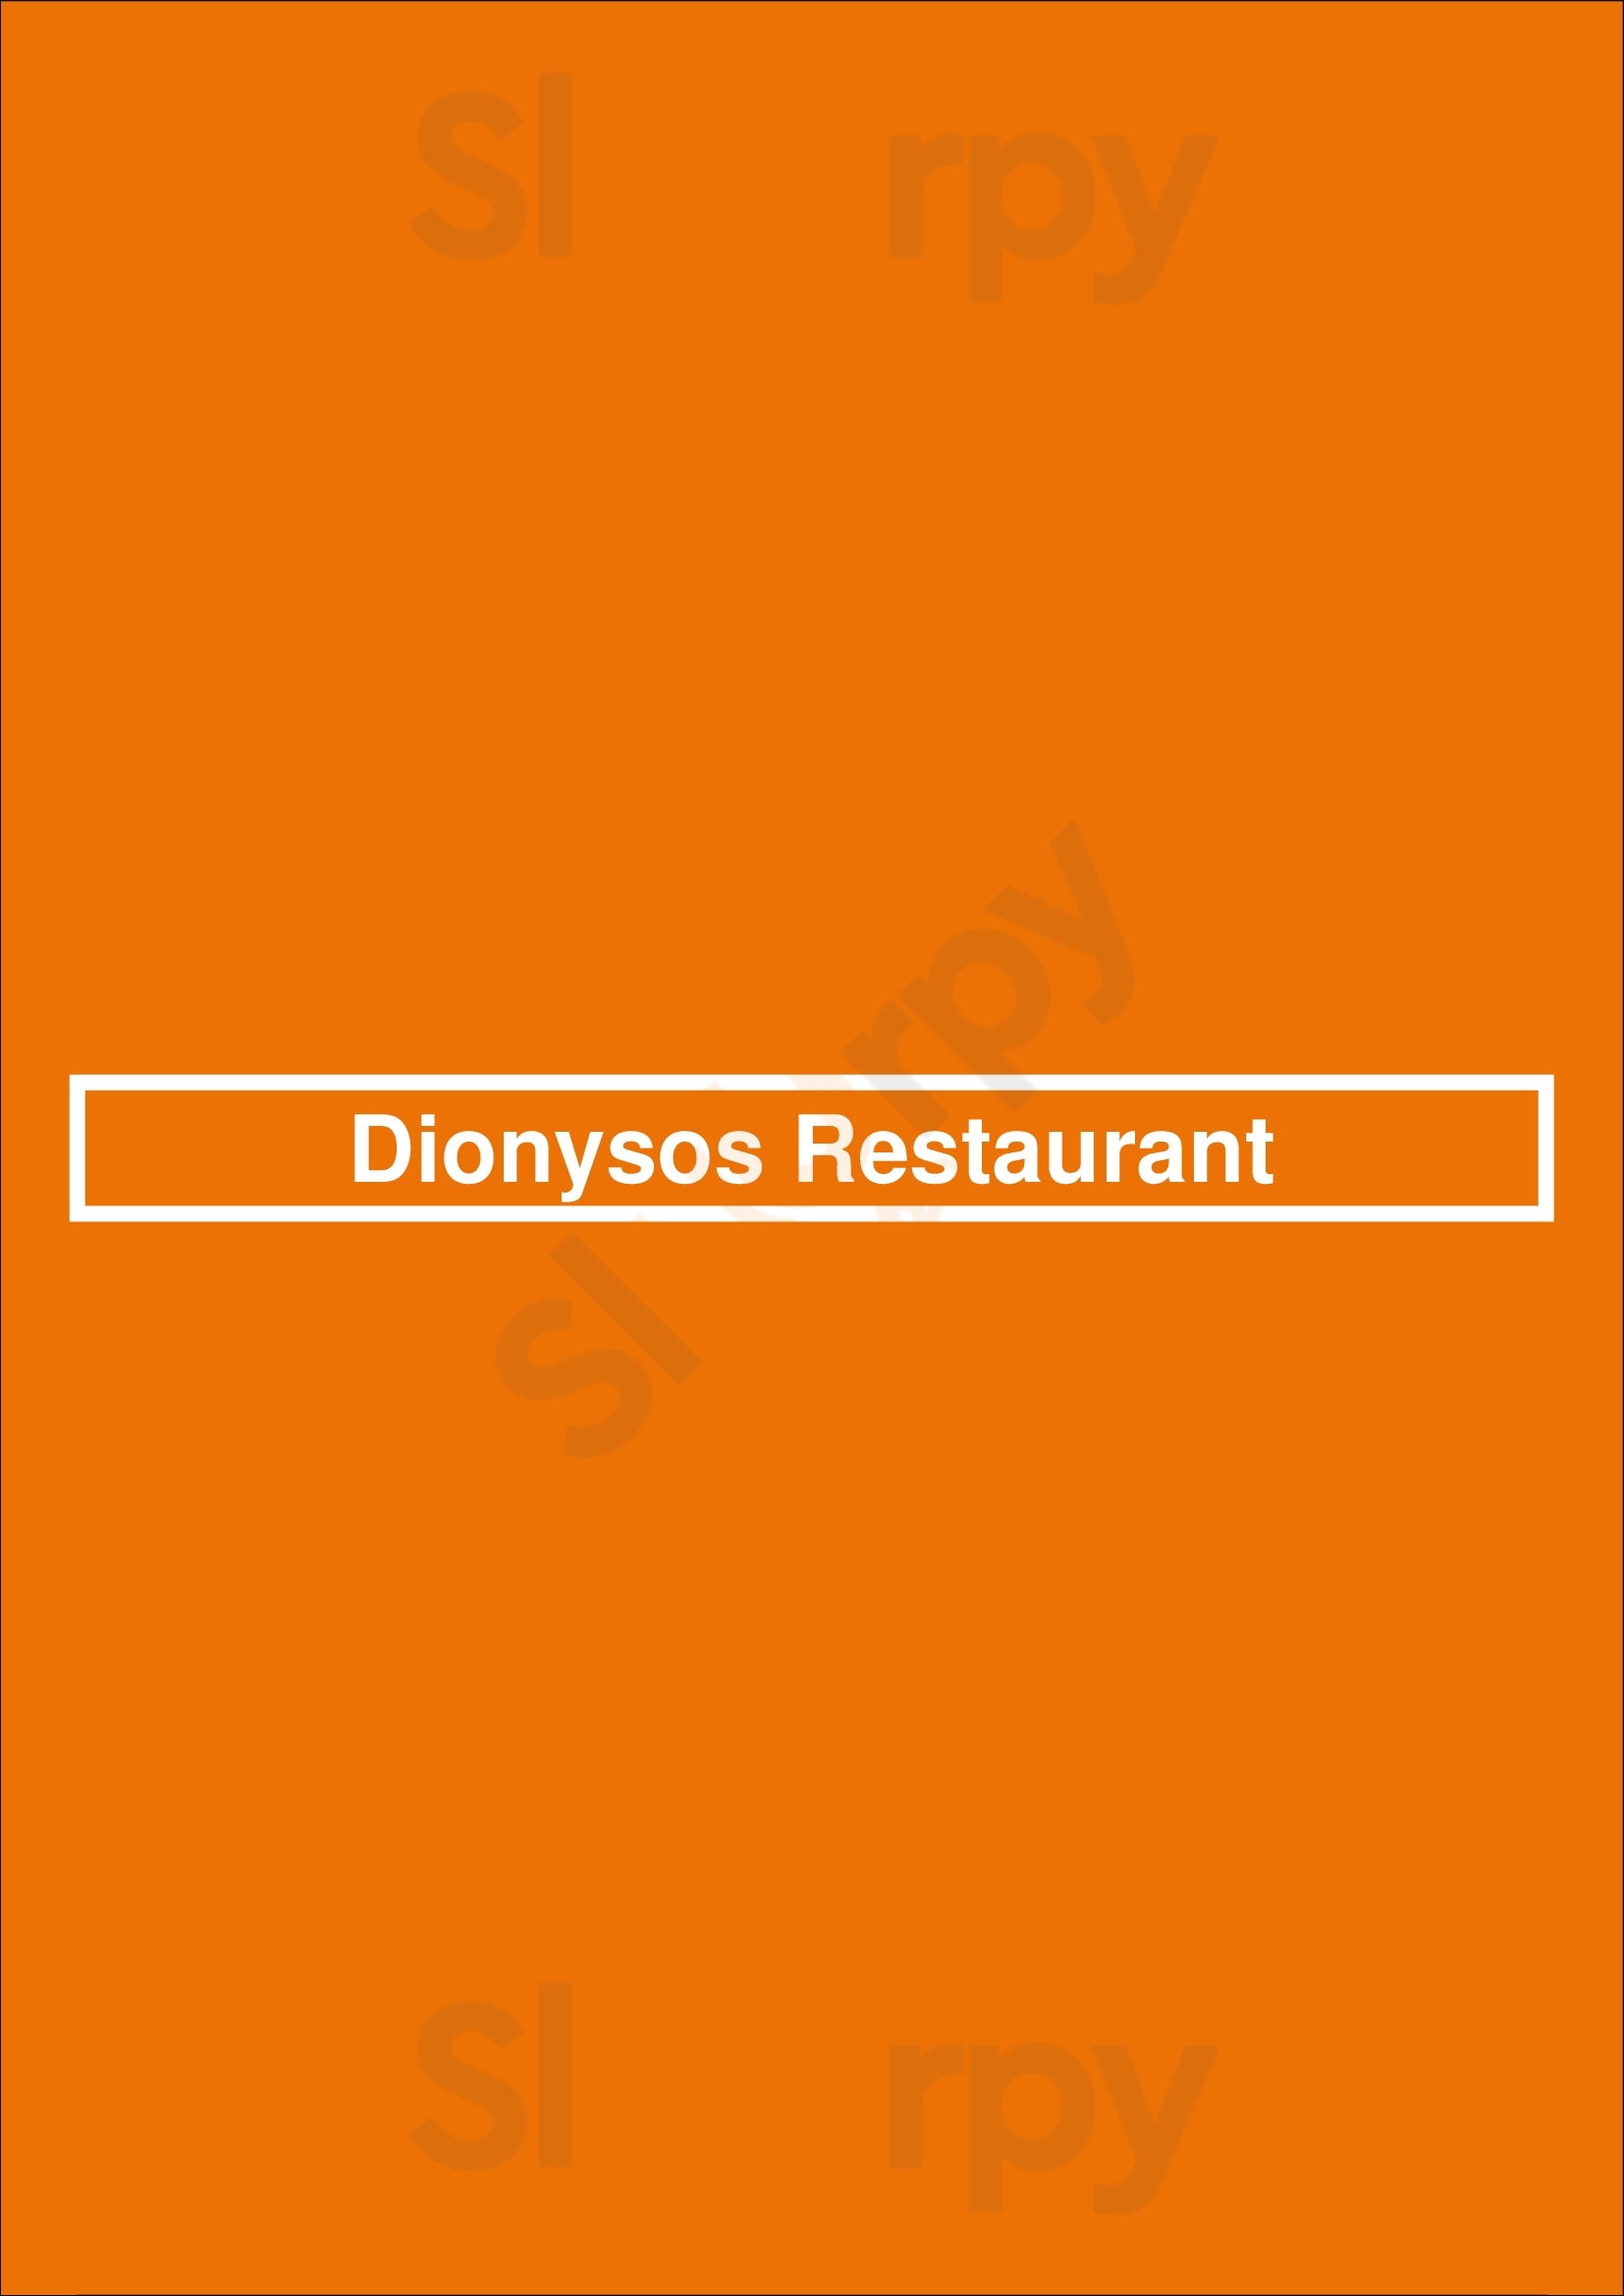 Dionysos Restaurant Astoria Menu - 1